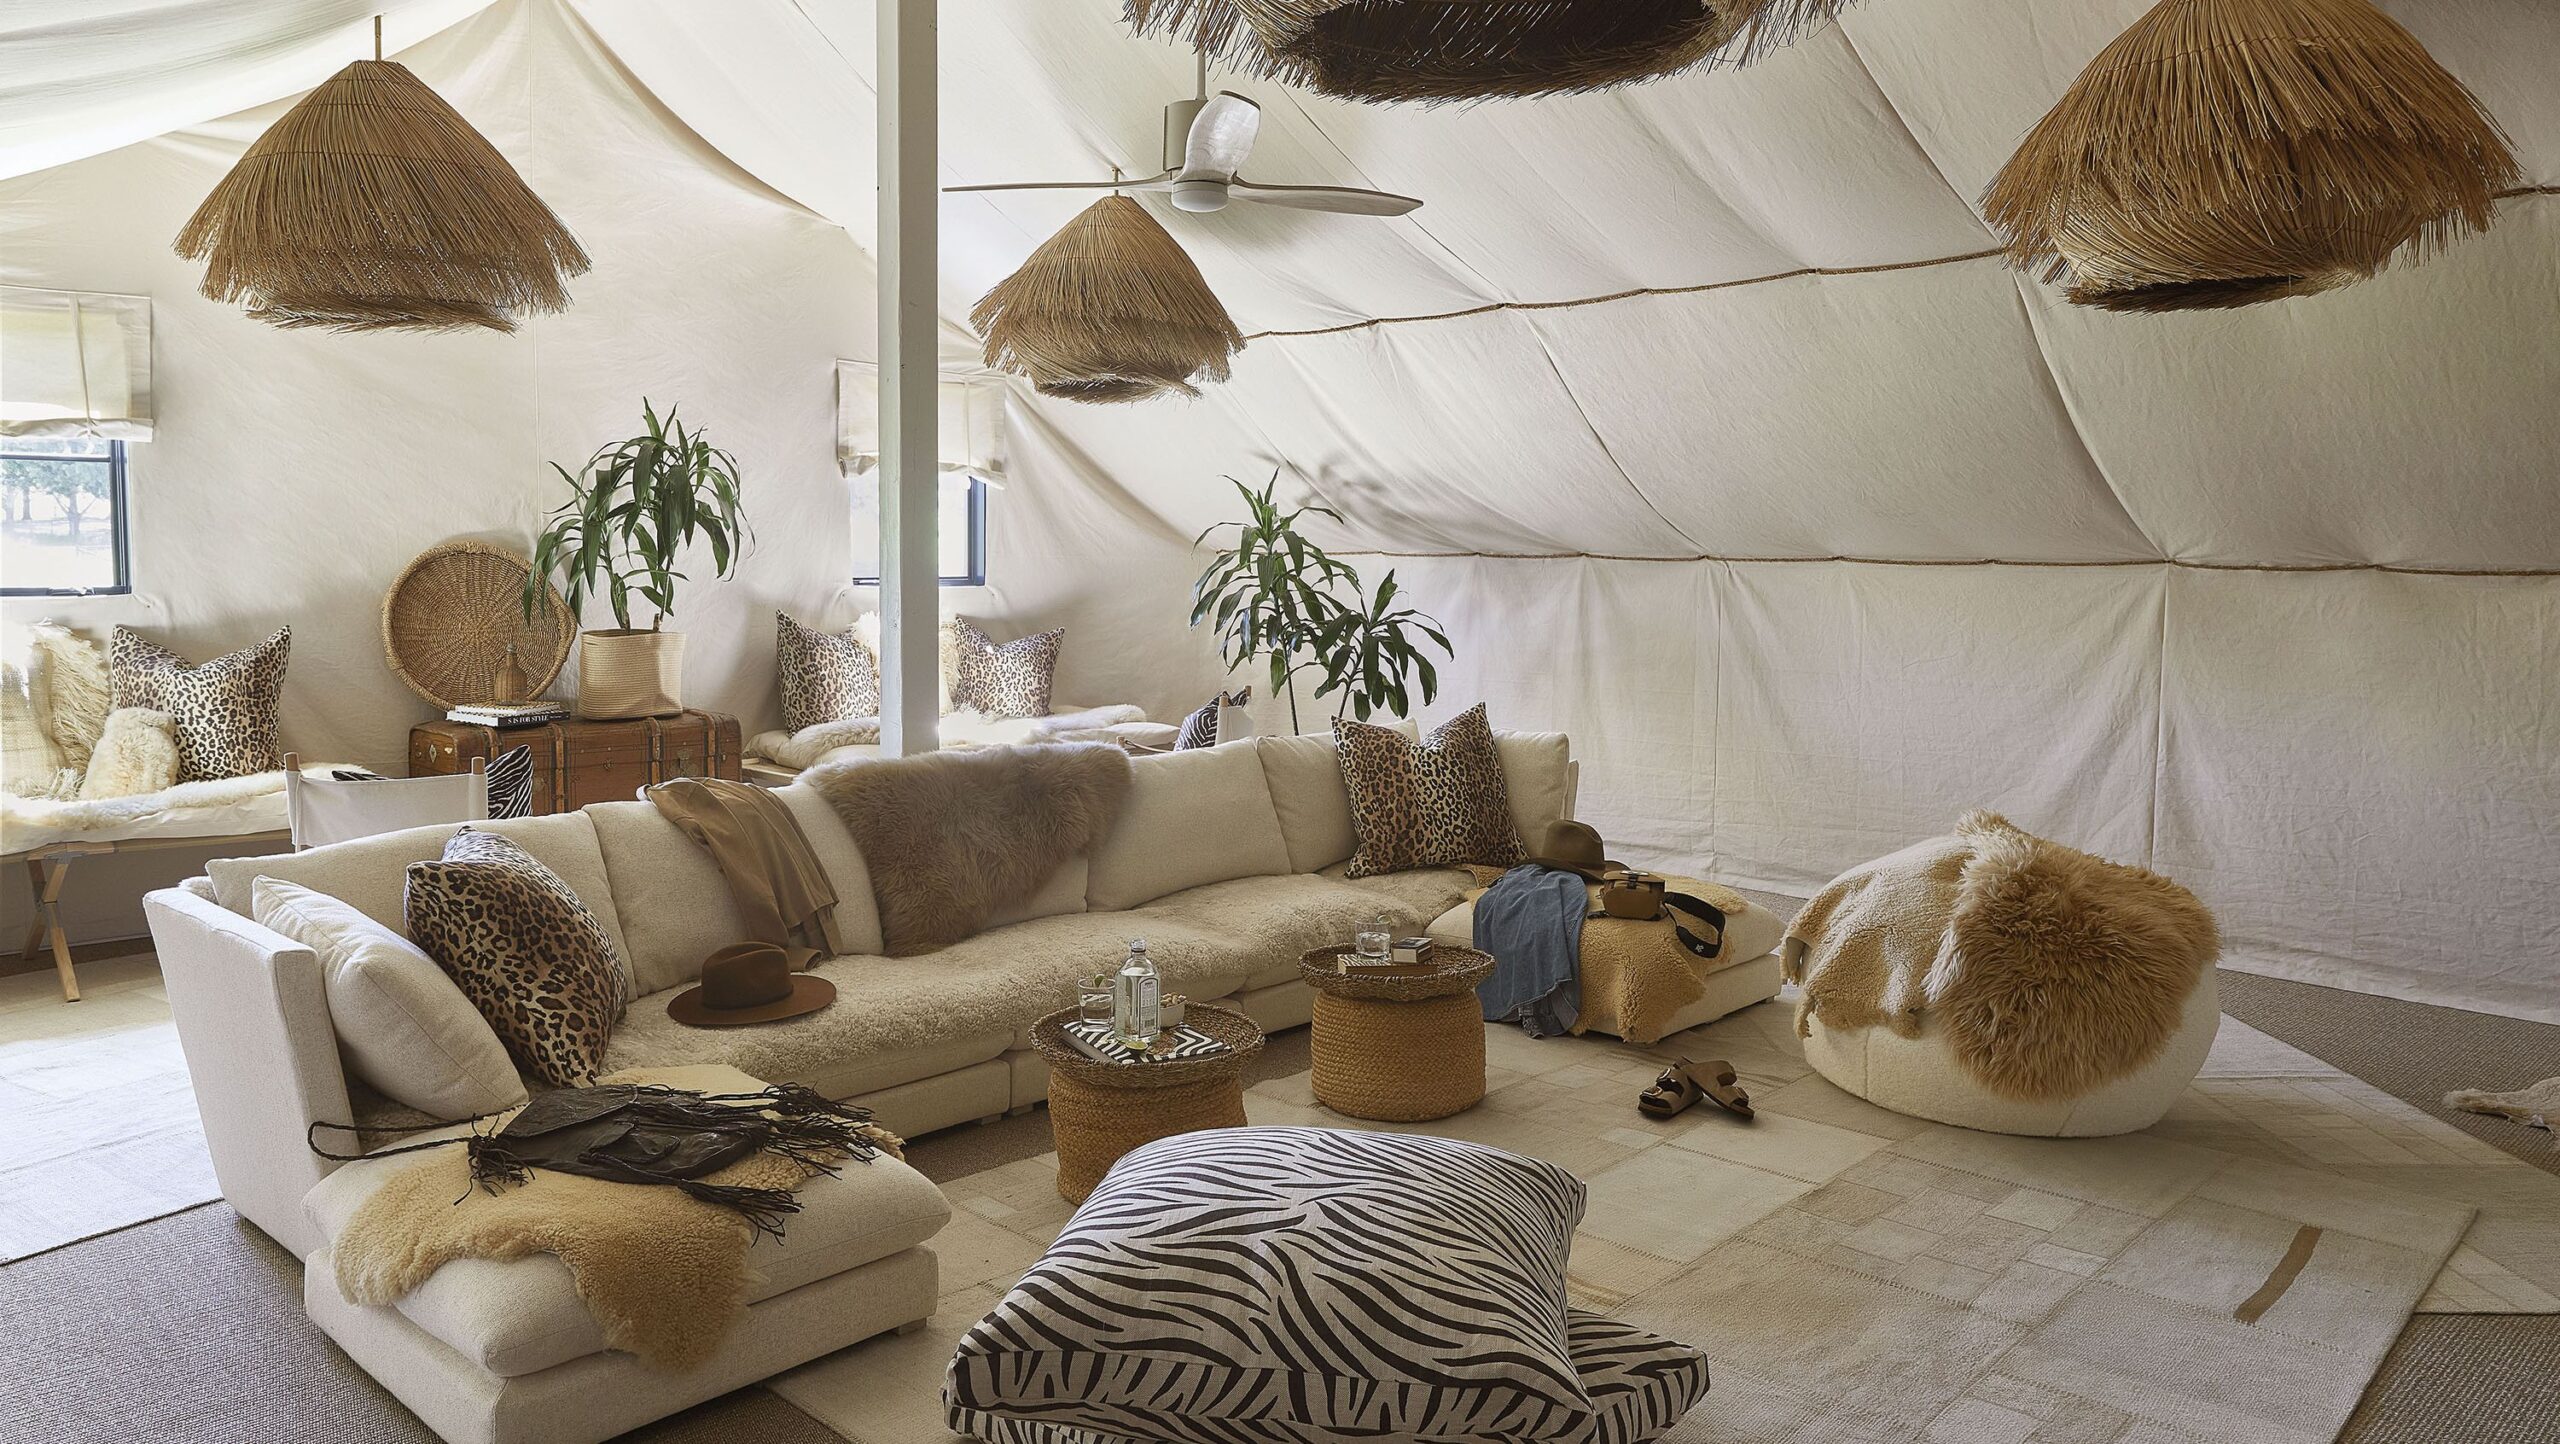 蒙大拿州一家狩猎风格的旅馆拥有自己的“帐篷房”|ART-Arrakis | 建筑室内设计的创新与灵感